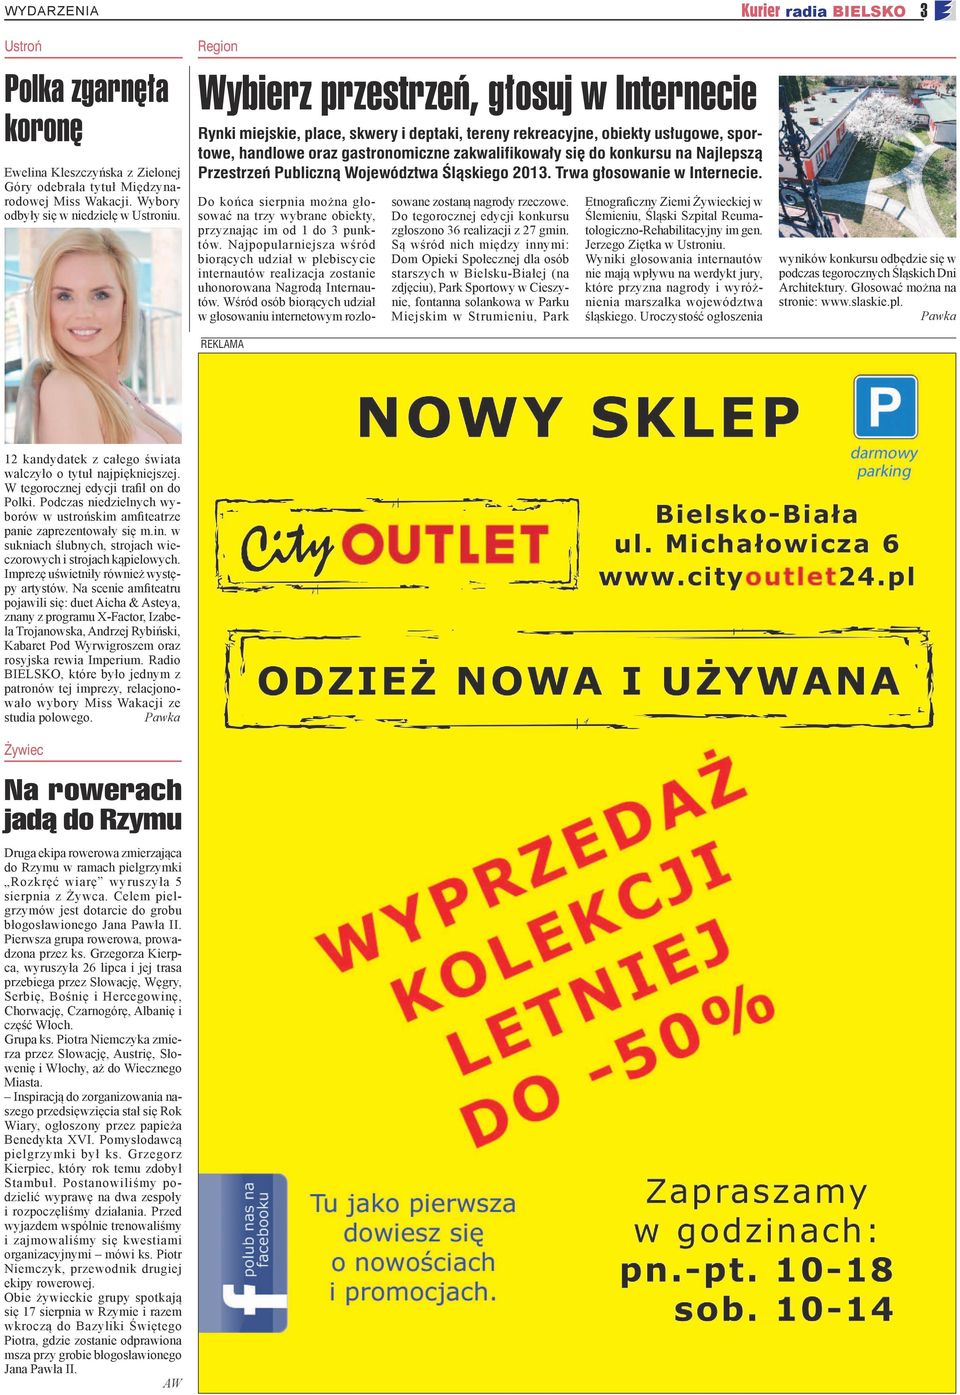 Najlepszą Przestrzeń Publiczną Województwa Śląskiego 2013. Trwa głosowanie w Internecie. Do końca sierpnia można głosować na trzy wybrane obiekty, przyznając im od 1 do 3 punktów.